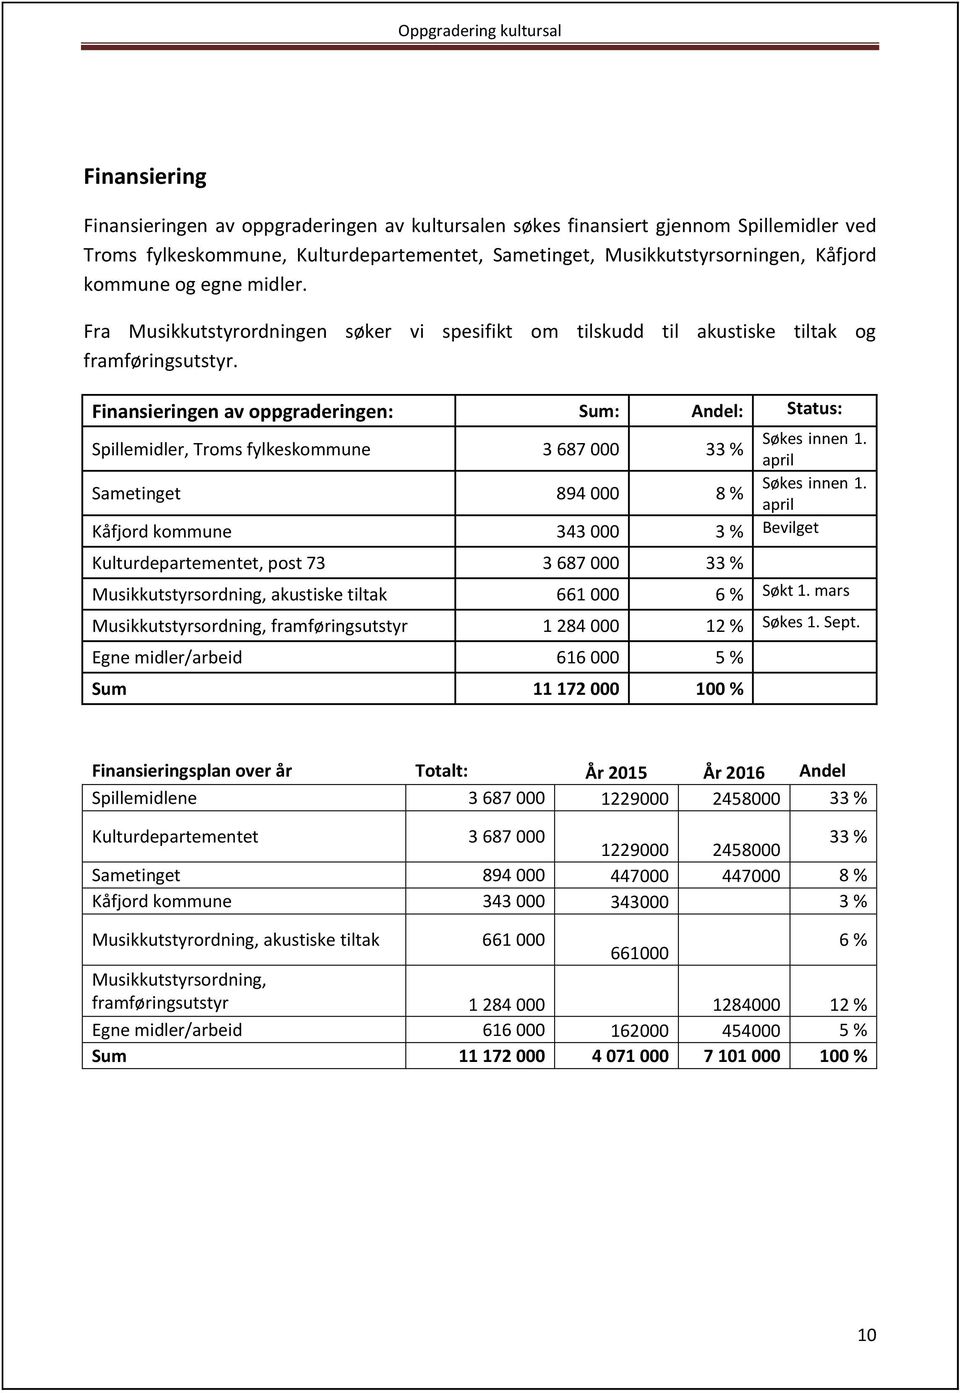 Finansieringen av oppgraderingen: Sum: Andel: Status: Spillemidler, Troms fylkeskommune 3 687 000 33 % Søkes innen 1. april Sametinget 894 000 8 % Søkes innen 1.